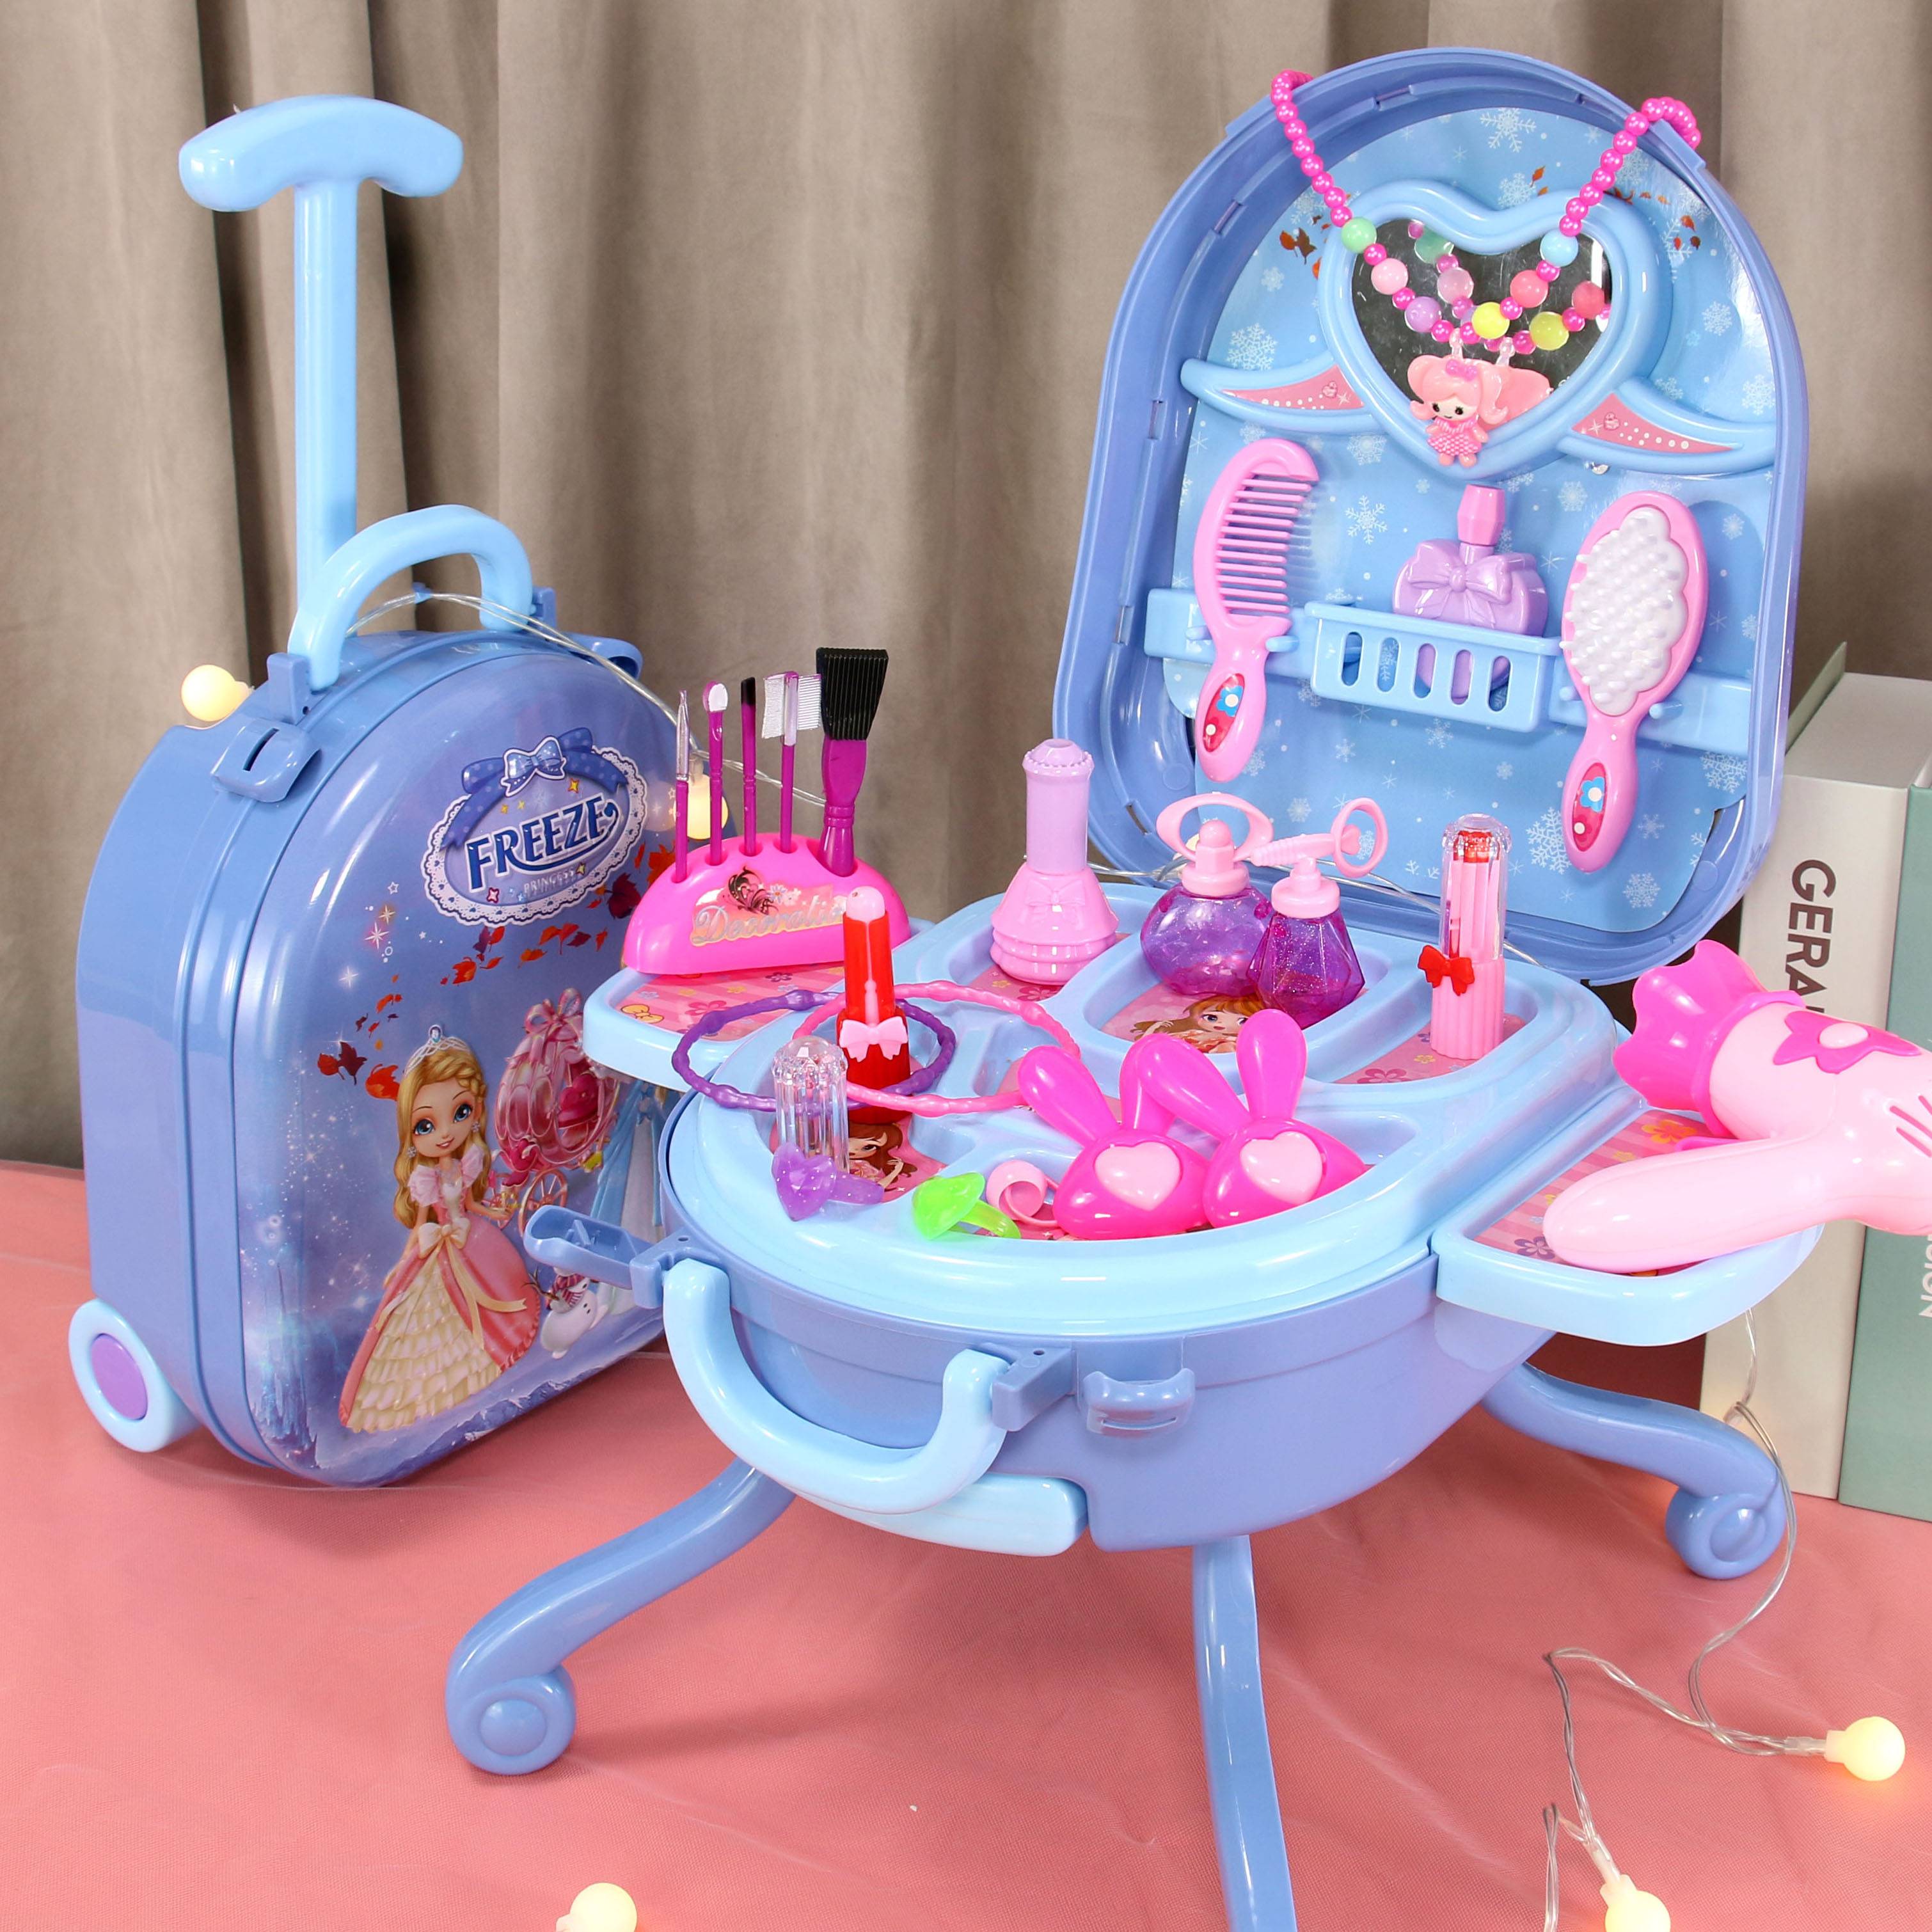 儿童玩具女孩过家家梳妆台爱莎艾莎沙公主女童宝宝生日礼物4-5岁3